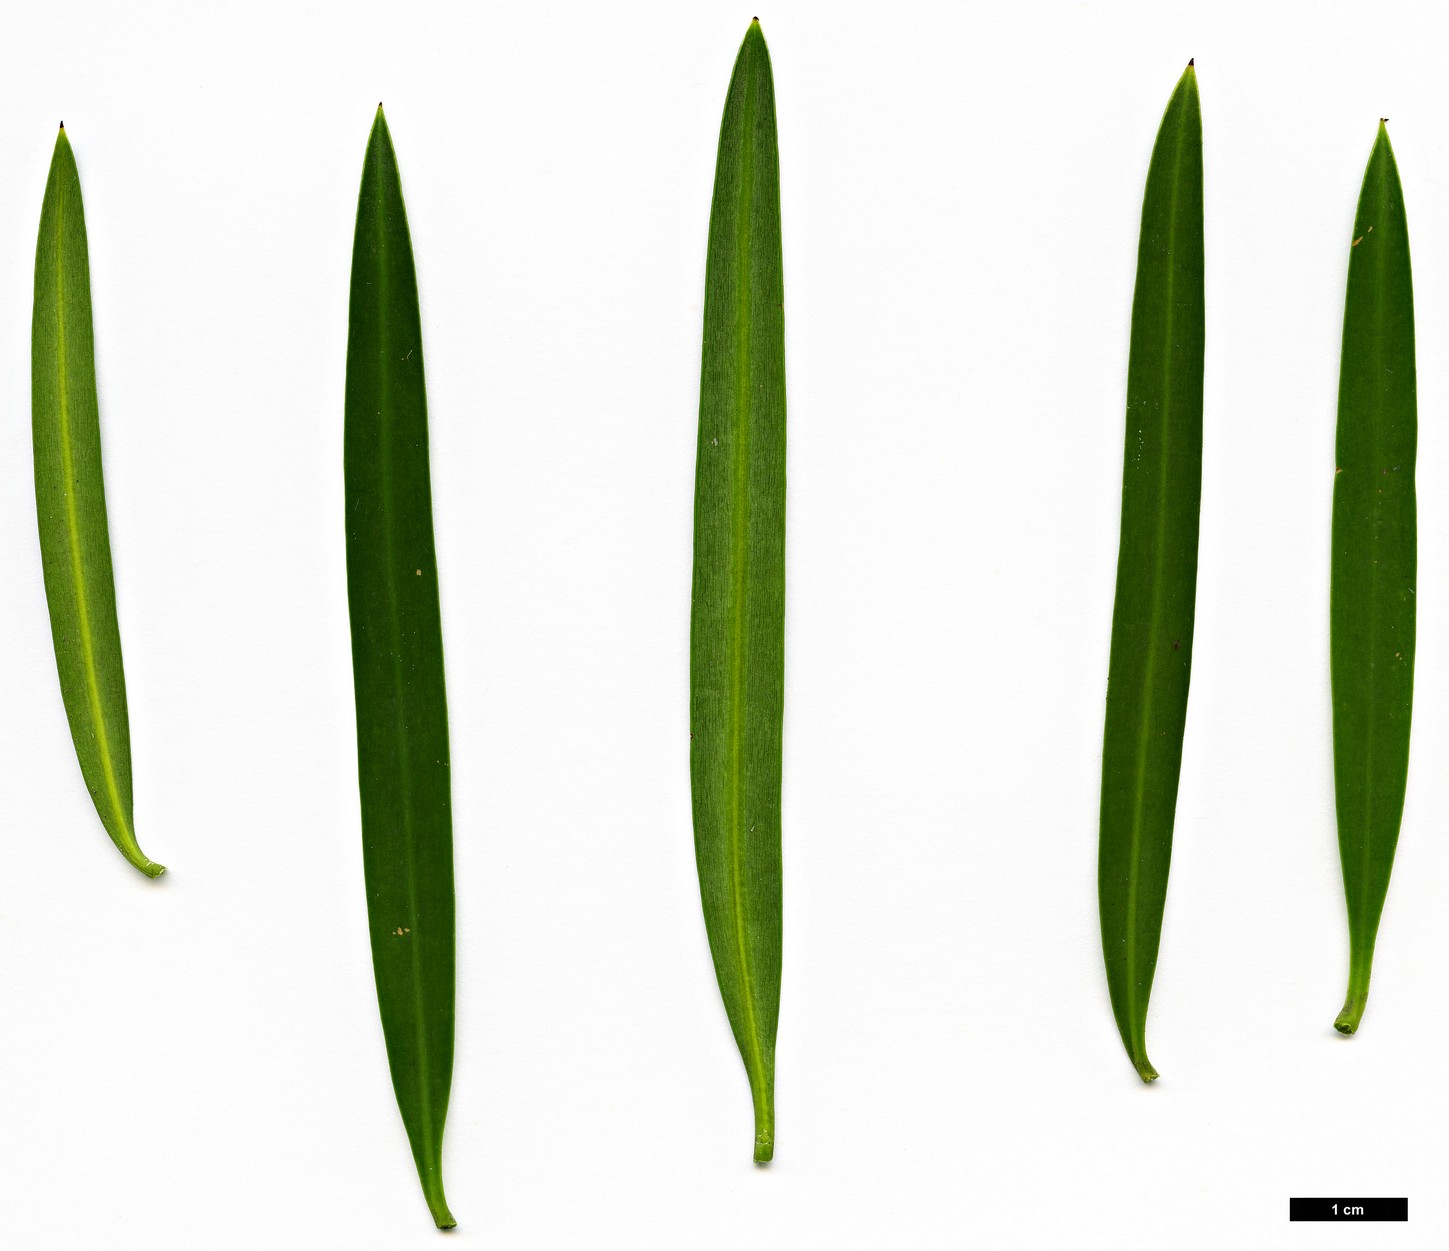 High resolution image: Family: Podocarpaceae - Genus: Podocarpus - Taxon: elongatus